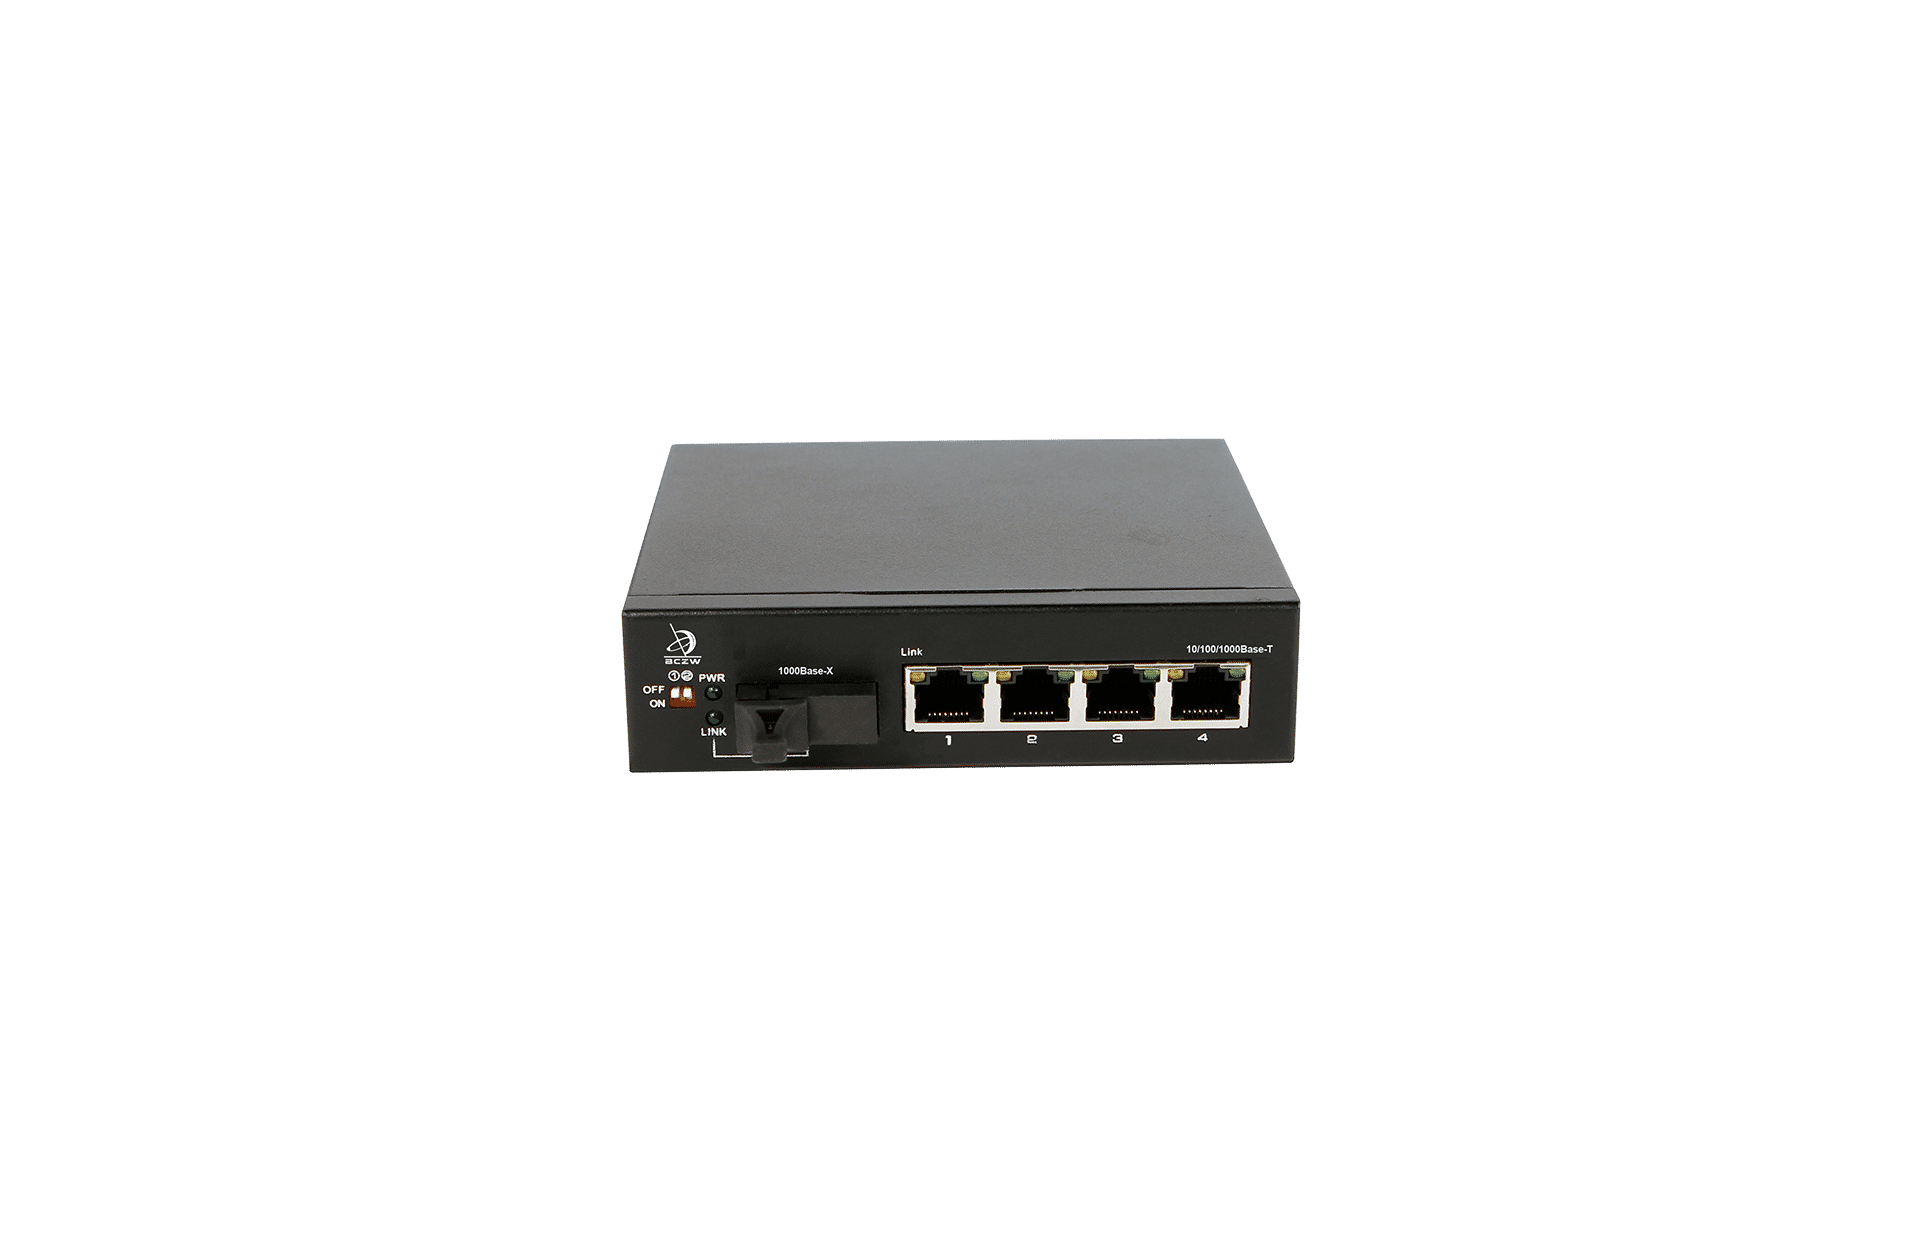 4 Port 10/100/1000BASE-T to 1000BASE-SX Gigabit Media Converter